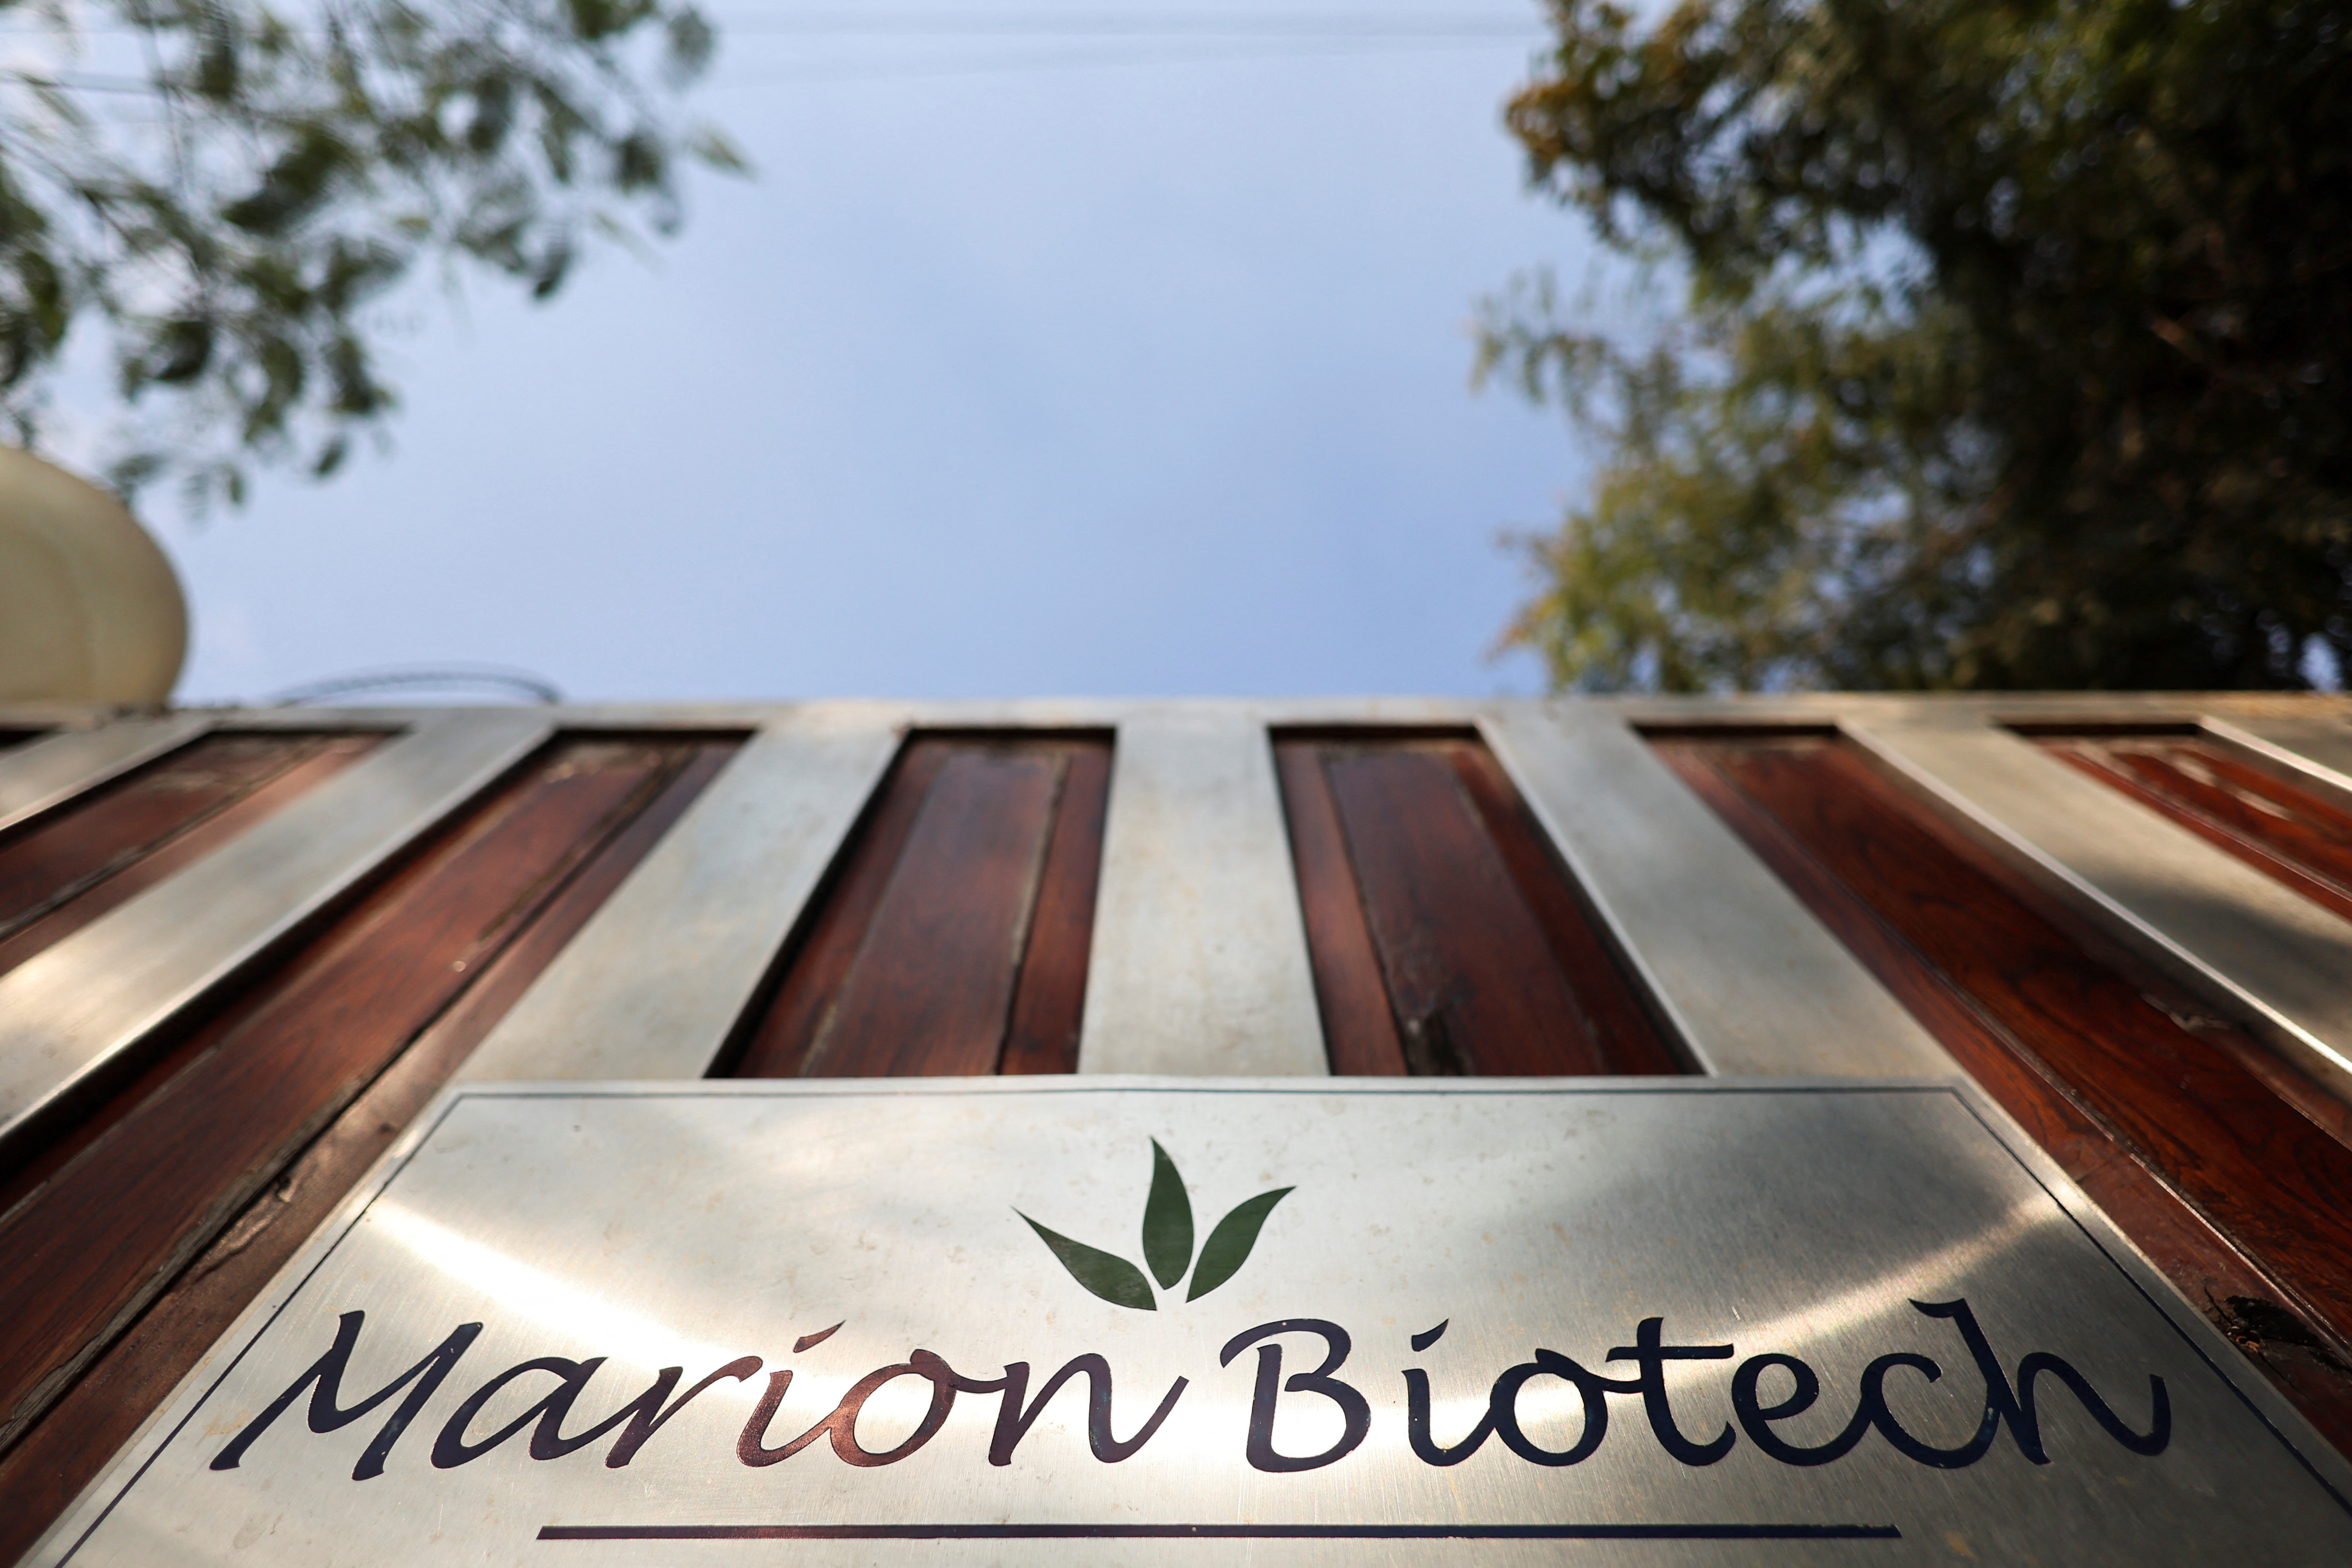 ヘルスケアおよび製薬会社であるマリオン バイオテックのロゴは、ノイダのオフィスの外のゲートに見られます。